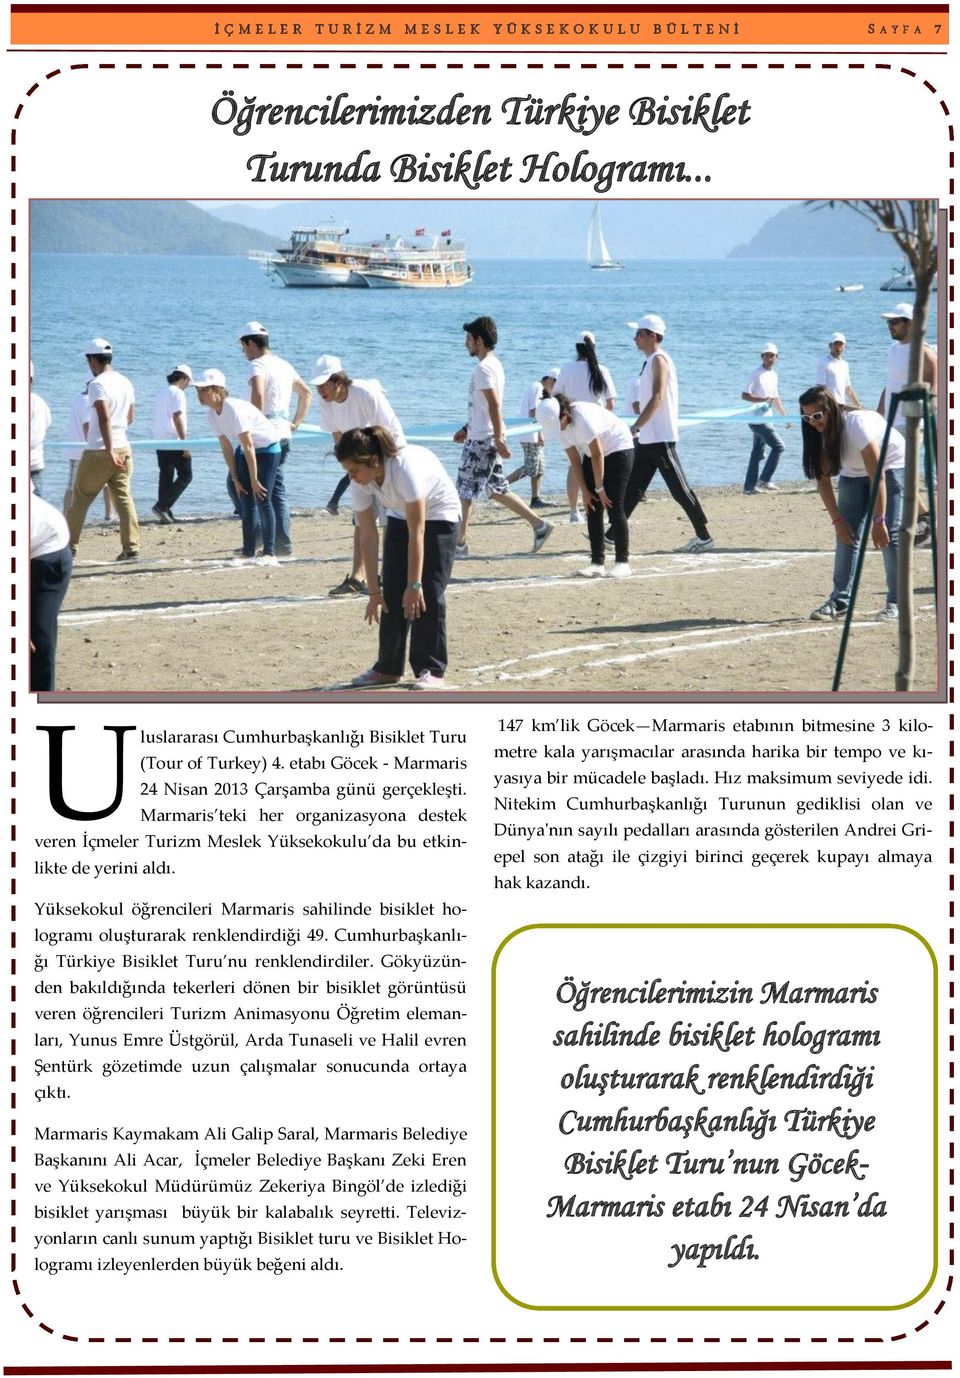 Marmaris teki her organizasyona destek veren İçmeler Turizm Meslek Yüksekokulu da bu etkinlikte de yerini aldı.